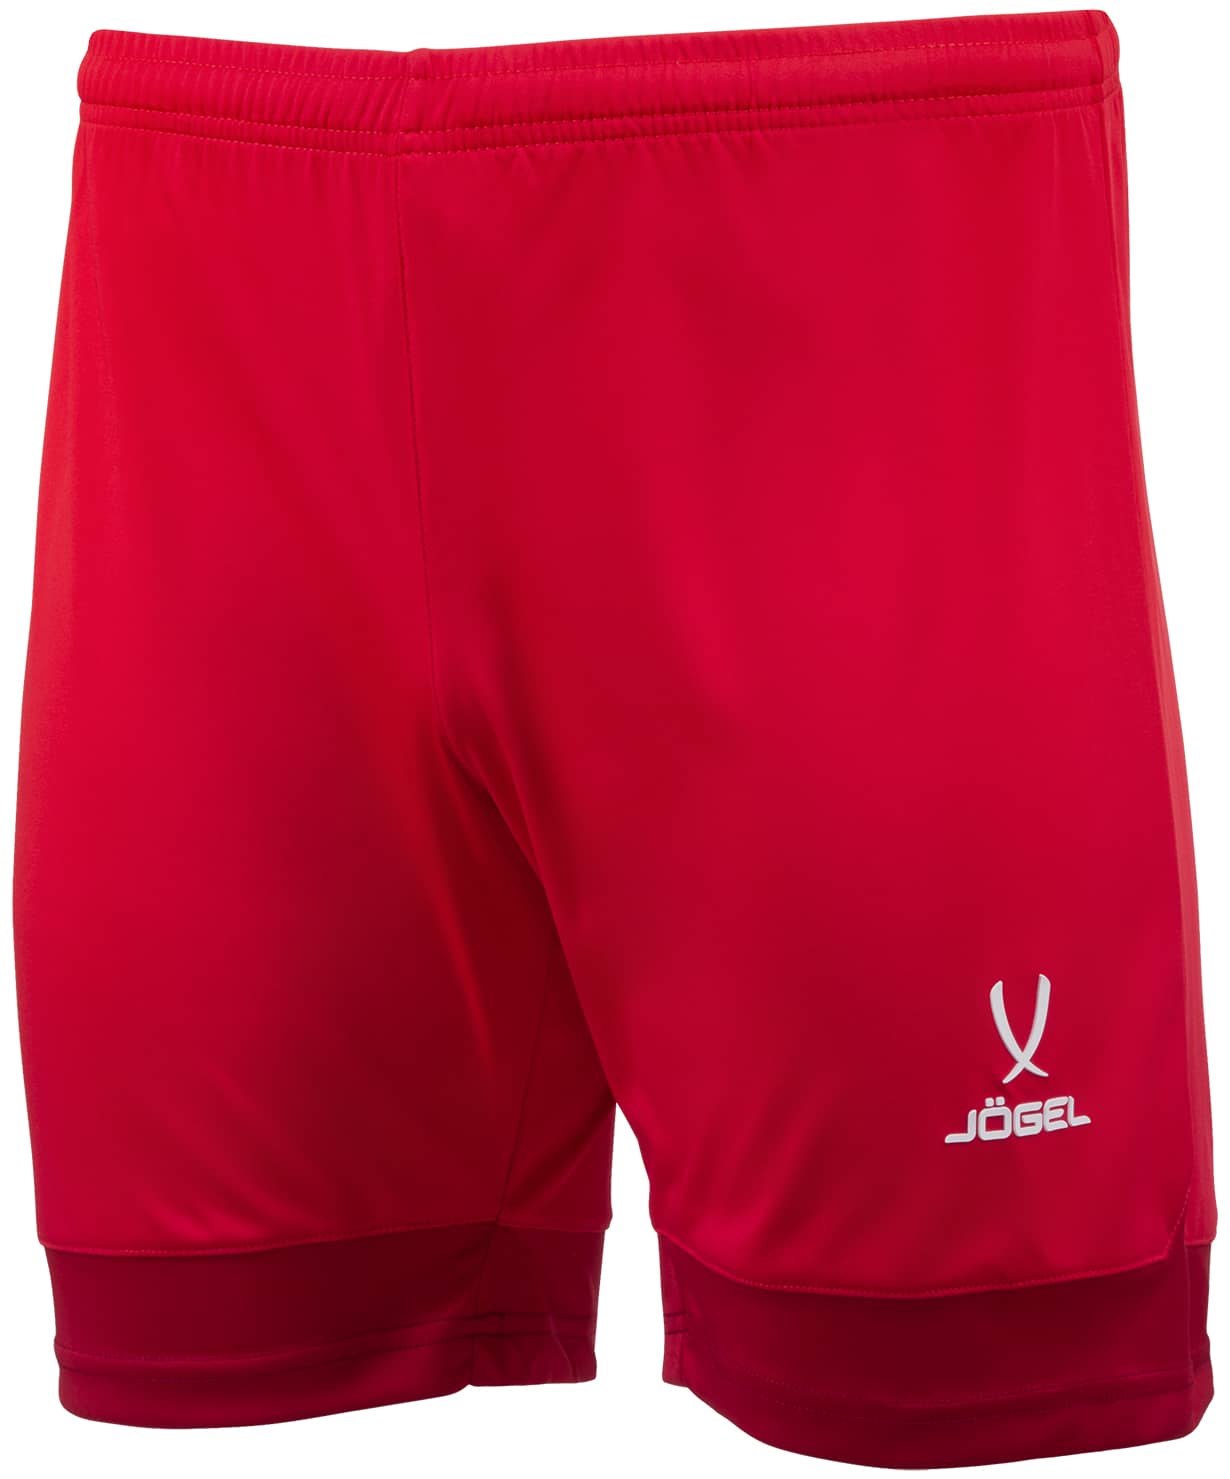 Шорты игровые Jogel DIVISION PerFormDRY Union Shorts, красный/темно-красный/белый